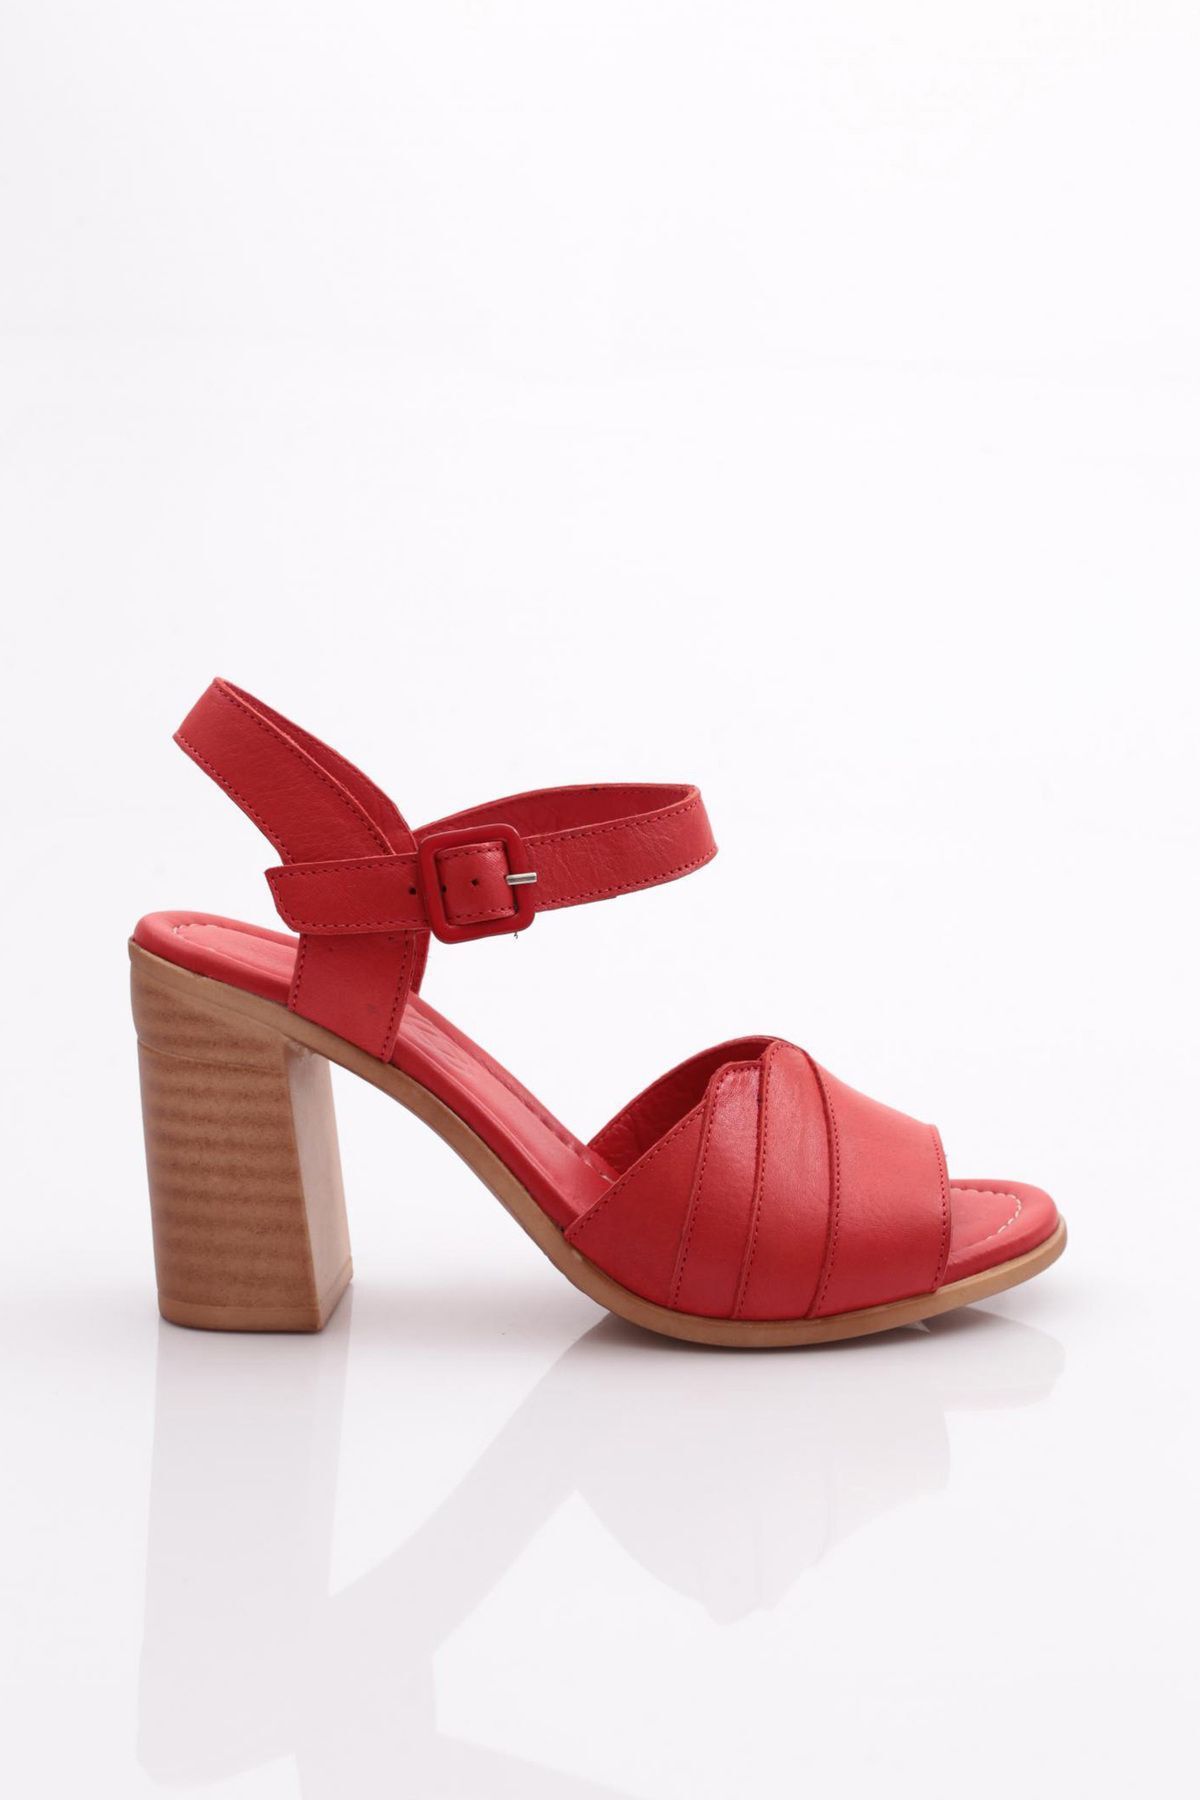 Dgn 1830 Kadın Topuklu Sandalet Kırmızı